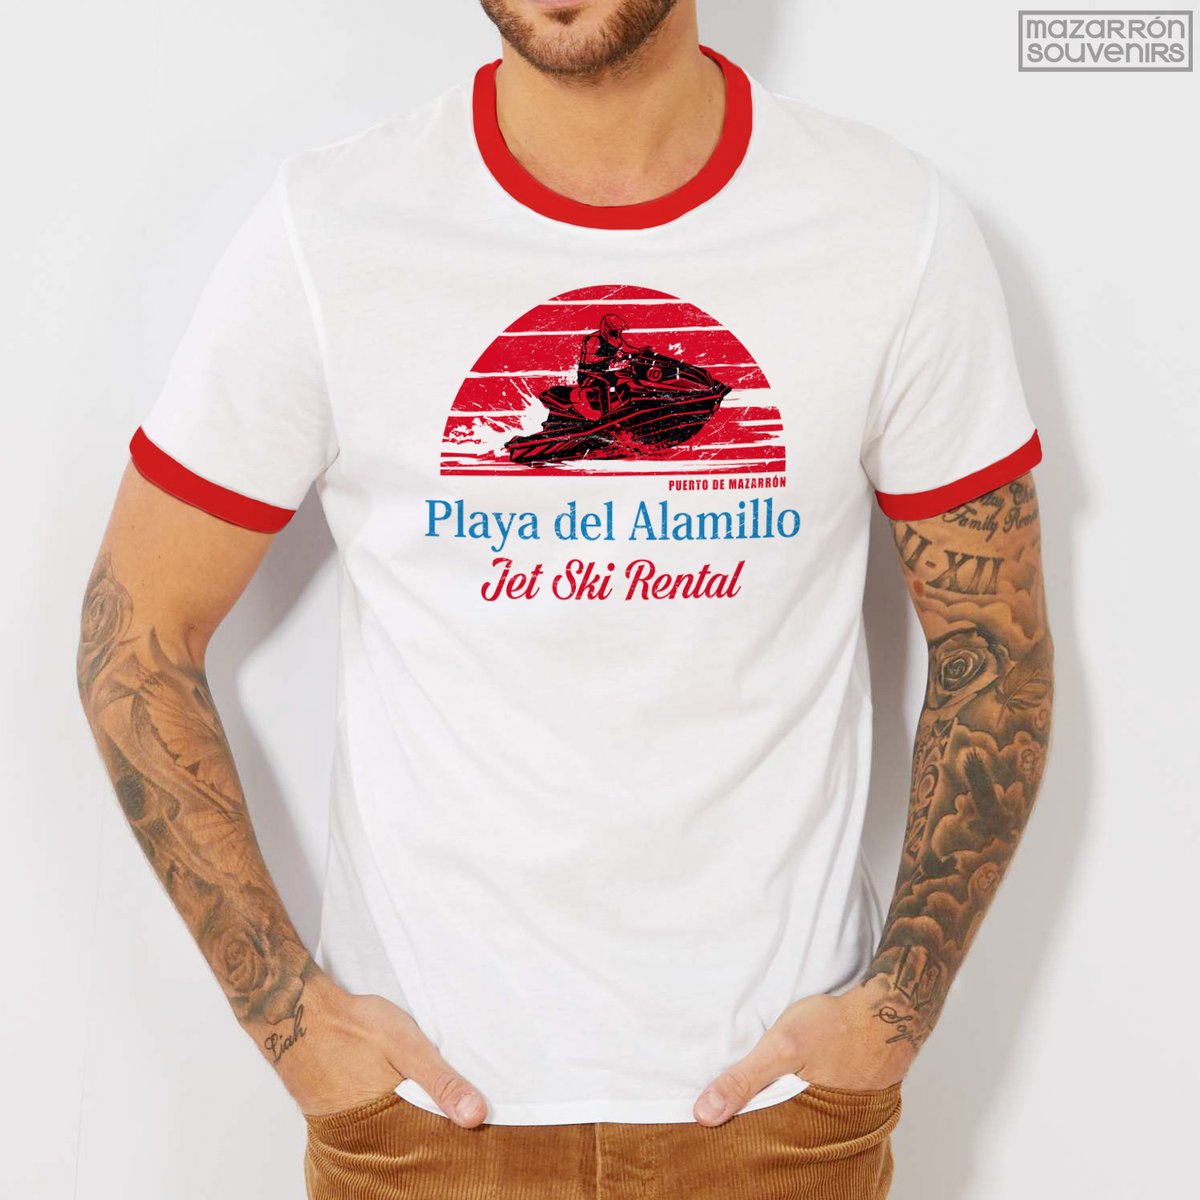 Camiseta estilo retro dedicada a las Motos Acuáticas y la Playa del Alamillo del Puerto de Mazarrón / T-Shirt available at our shop in Puerto de Mazarrón

#mazarronsouvenirs #jetskirental #playasdemazarron #puertodemazarron #mazarron #motosacuaticas🚤 #vintagelook #ochenterostyle